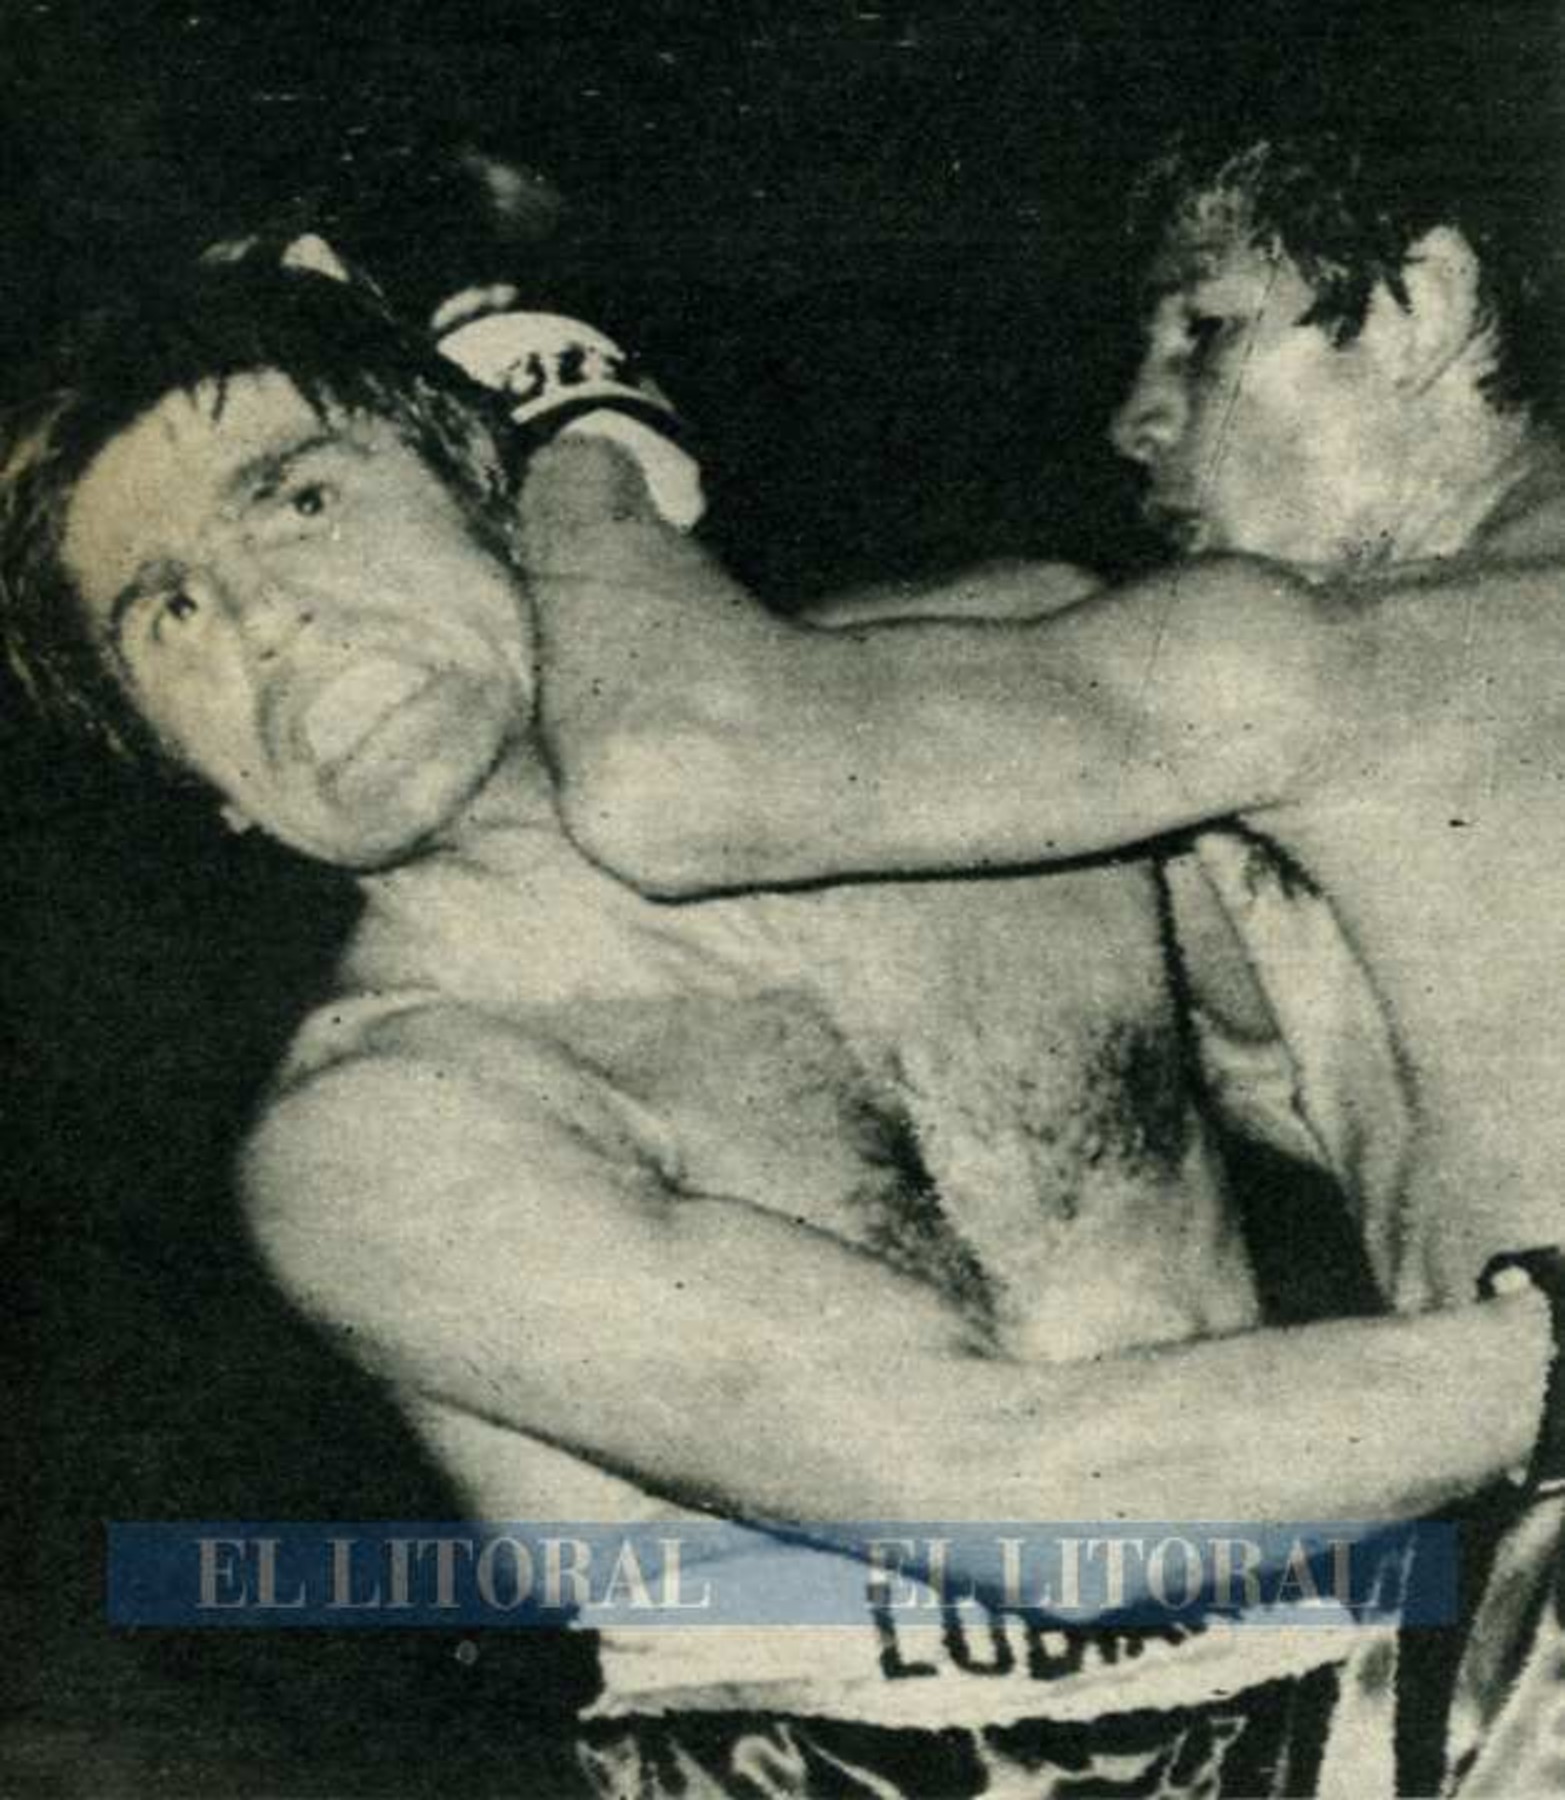 Fue la primera pelea fuera de América del sur. Nació una leyenda del boxeo argentino.